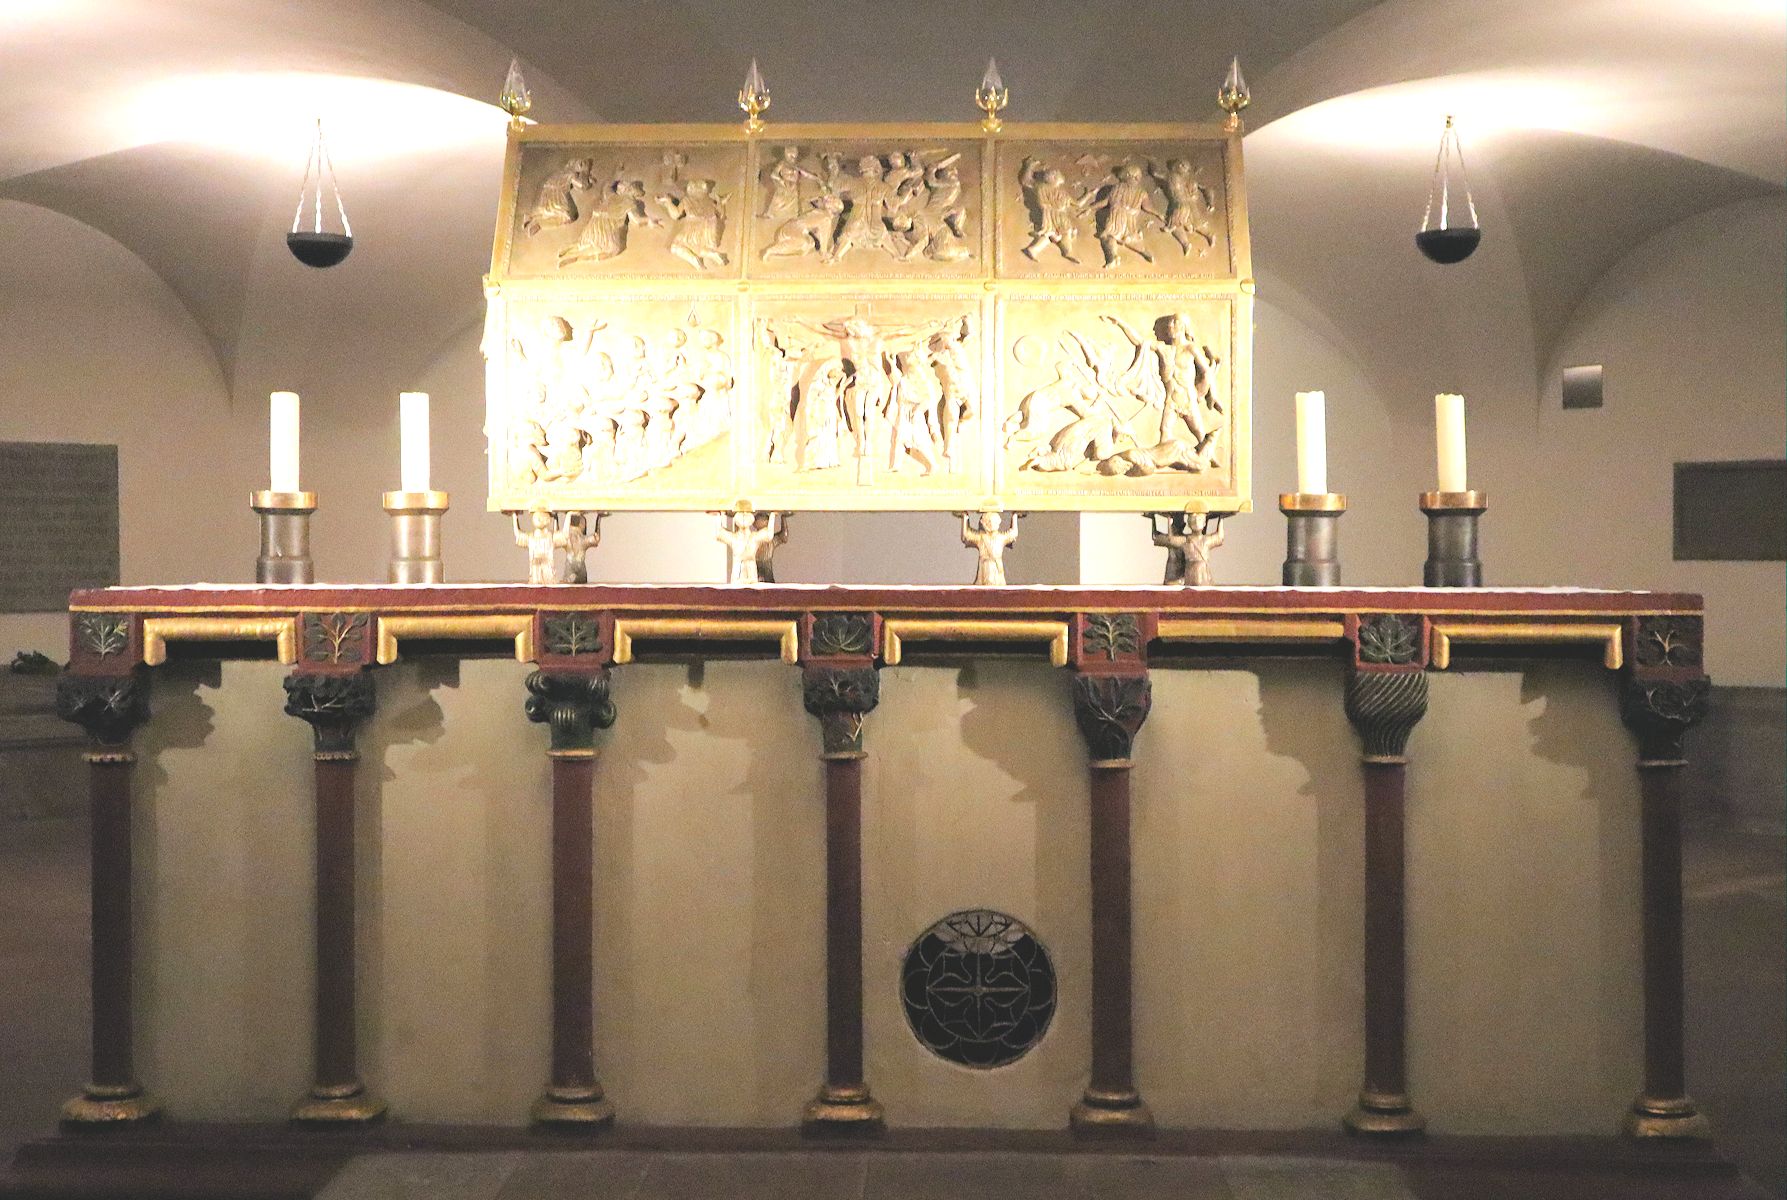 Heinrich Gerhard Bücker: Schrein mit den Reliquien von Kilian, Kolonat und Totnan, 1986/1987, auf einem frühgotischen Altar in der Kiliansgruft des Neumünsters in Würzburg